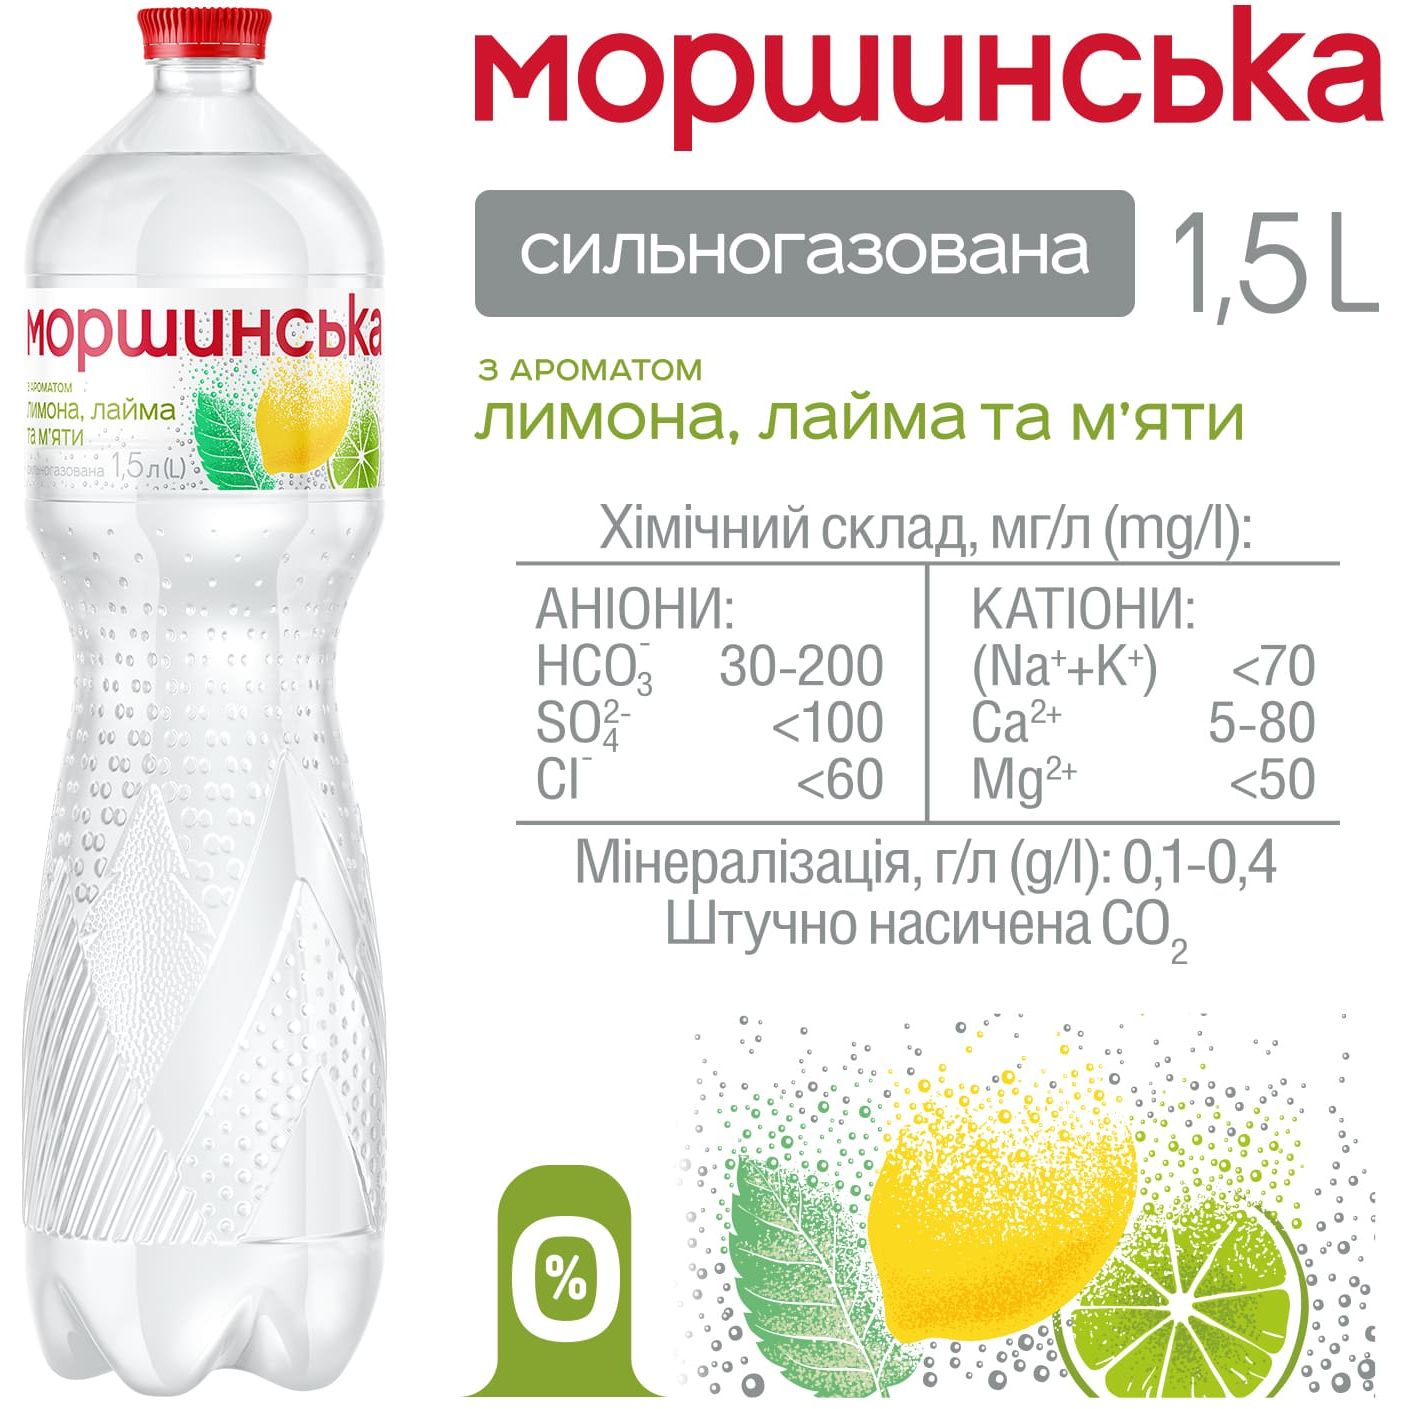 Напиток Моршинская с ароматом лимона, лайма и мяты сильногазированный 1.5 л - фото 3